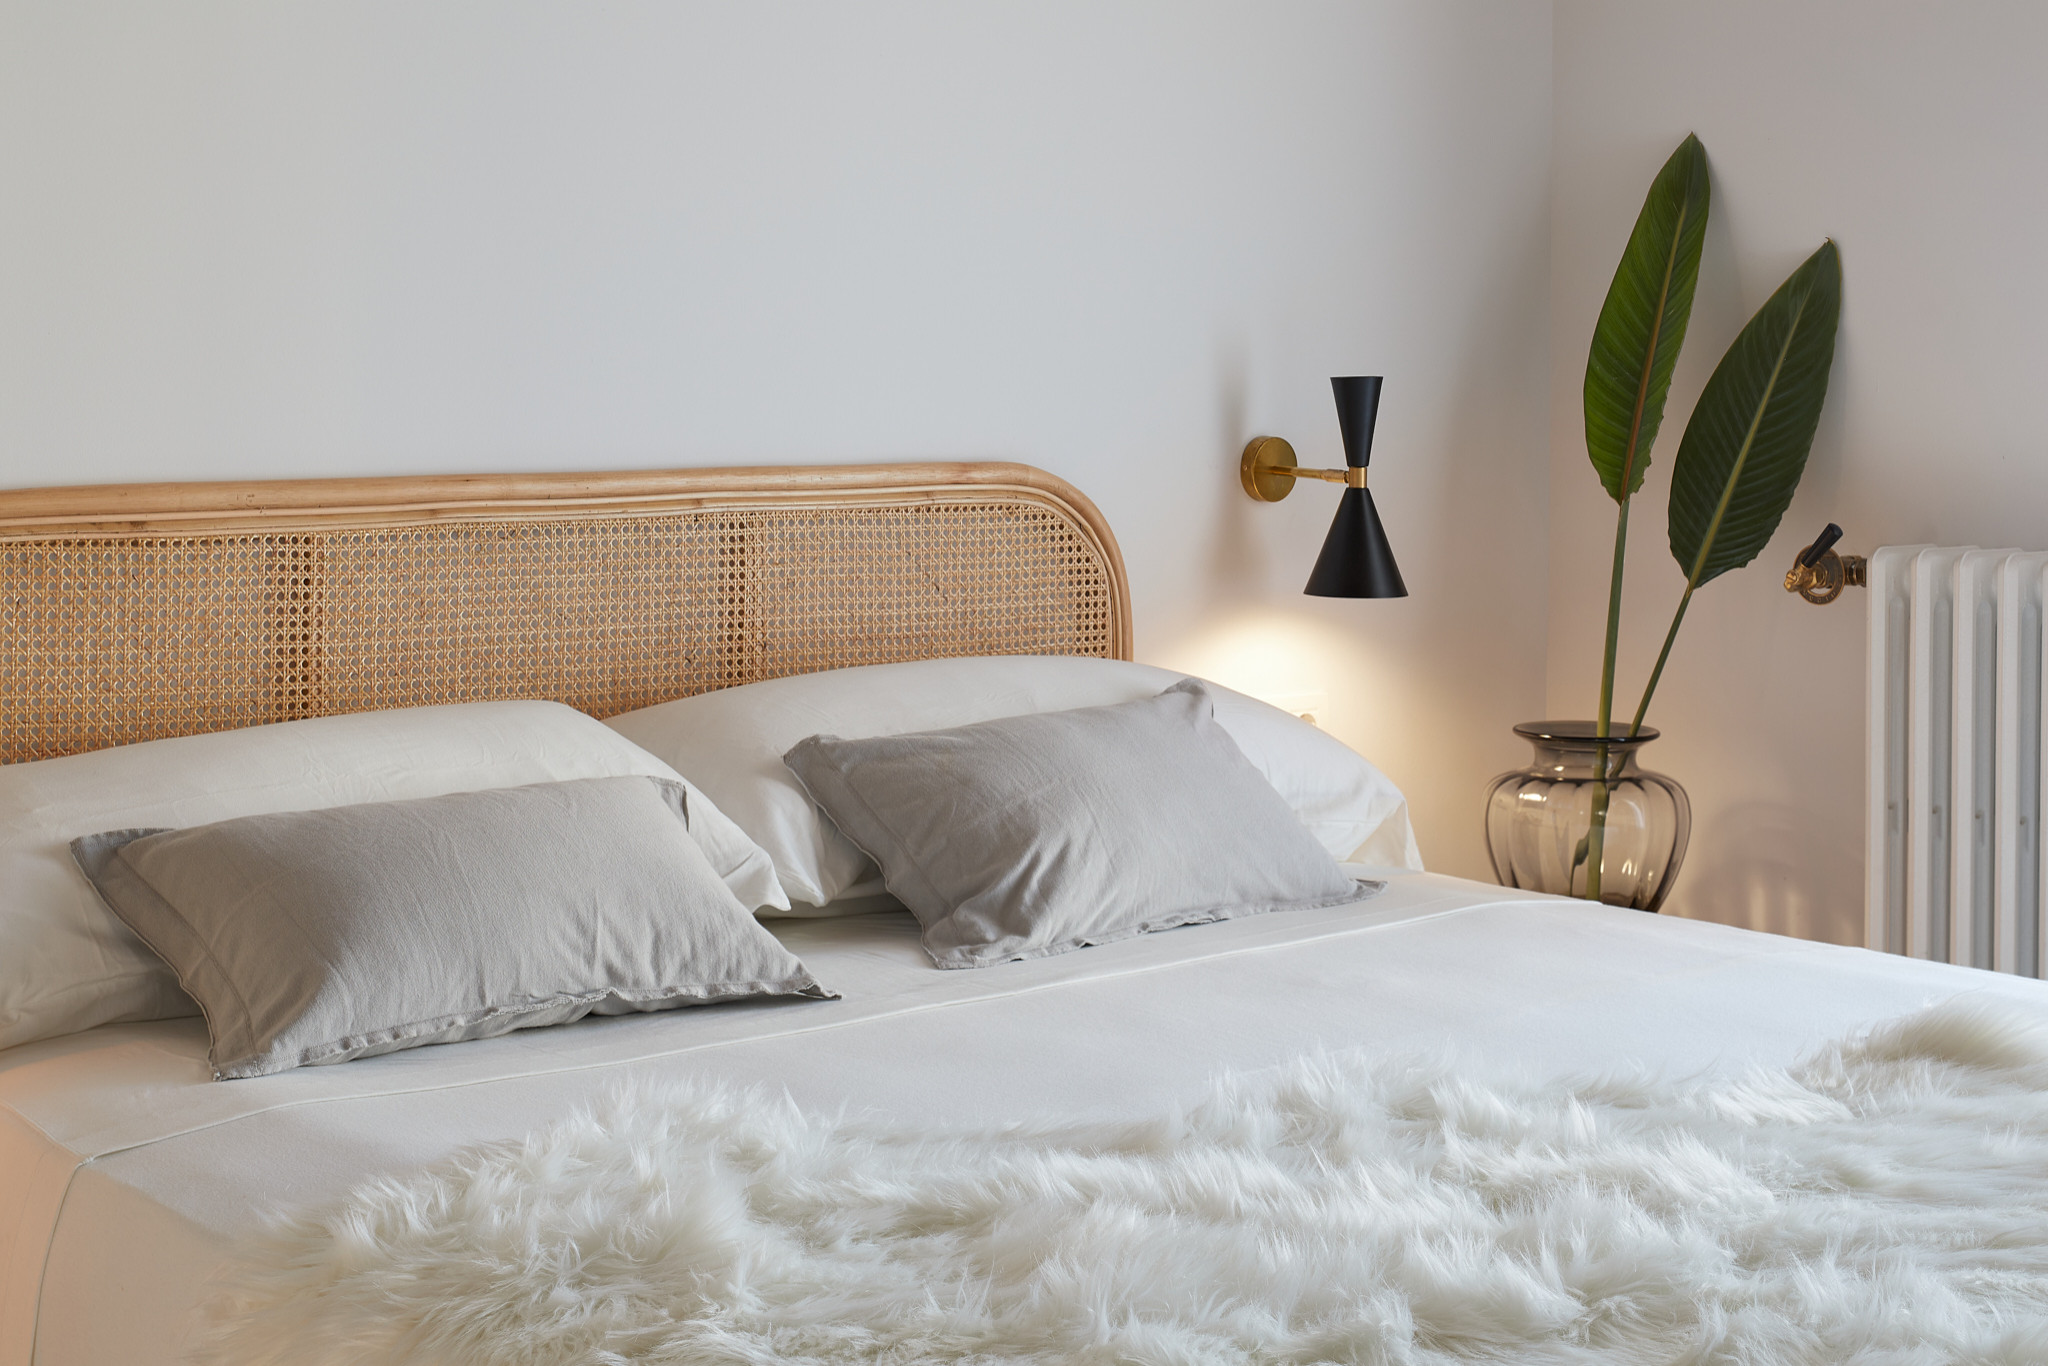 Decoración y cabezal de la cama - Modern - Other - by Davide Pellegrini  Fotógrafo | Houzz